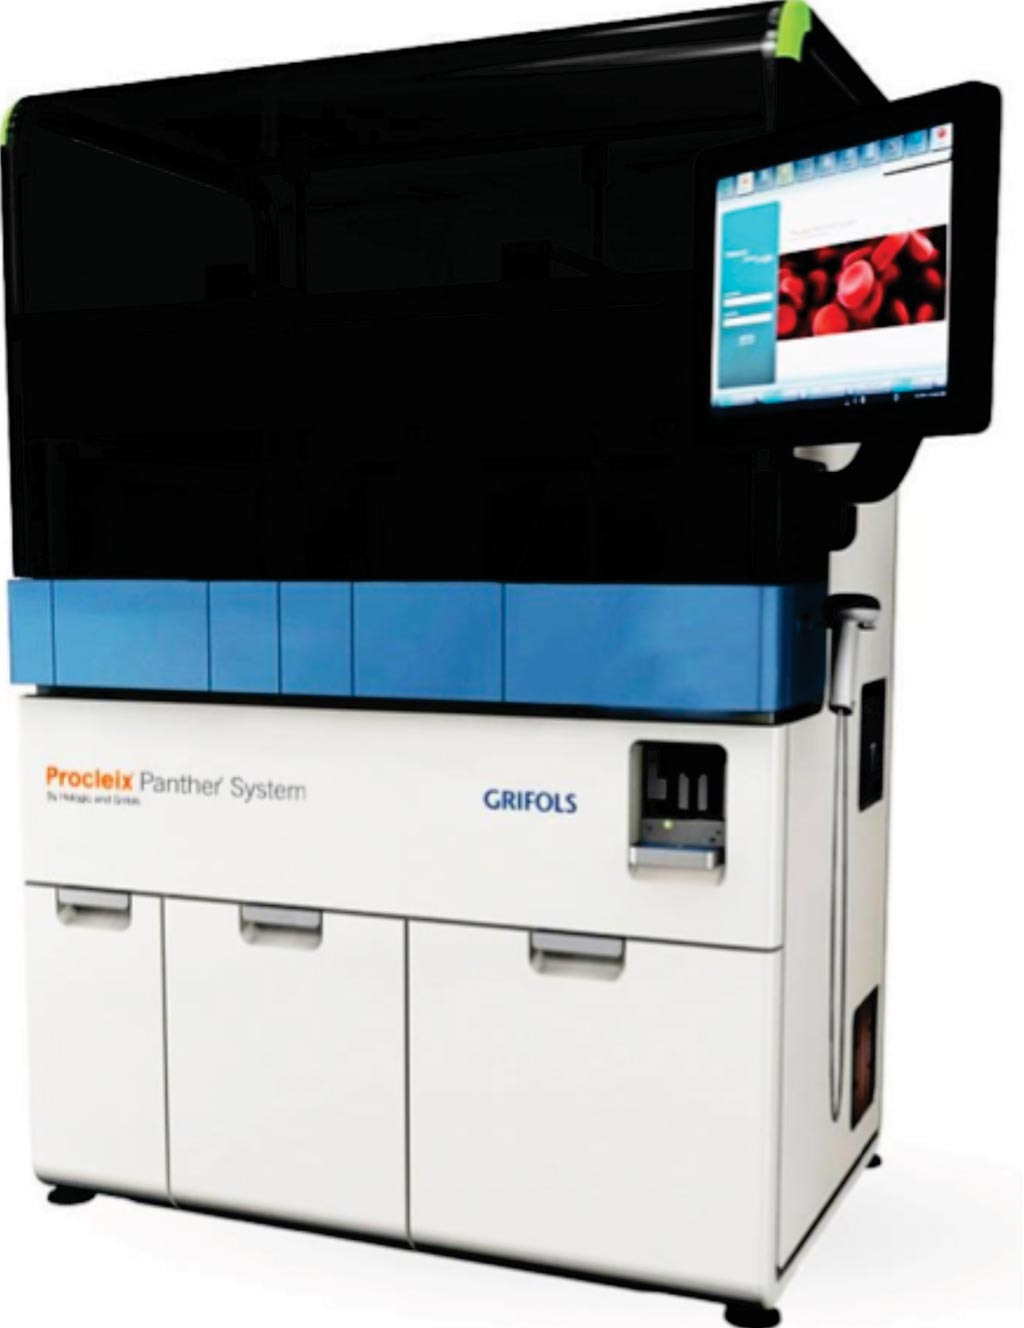 Procleix Panther, полностью интегрированная и автоматизированная система обработки нуклеиновых кислот для скрининга крови и плазмы (фото любезно предоставлено Grifols Diagnostics).